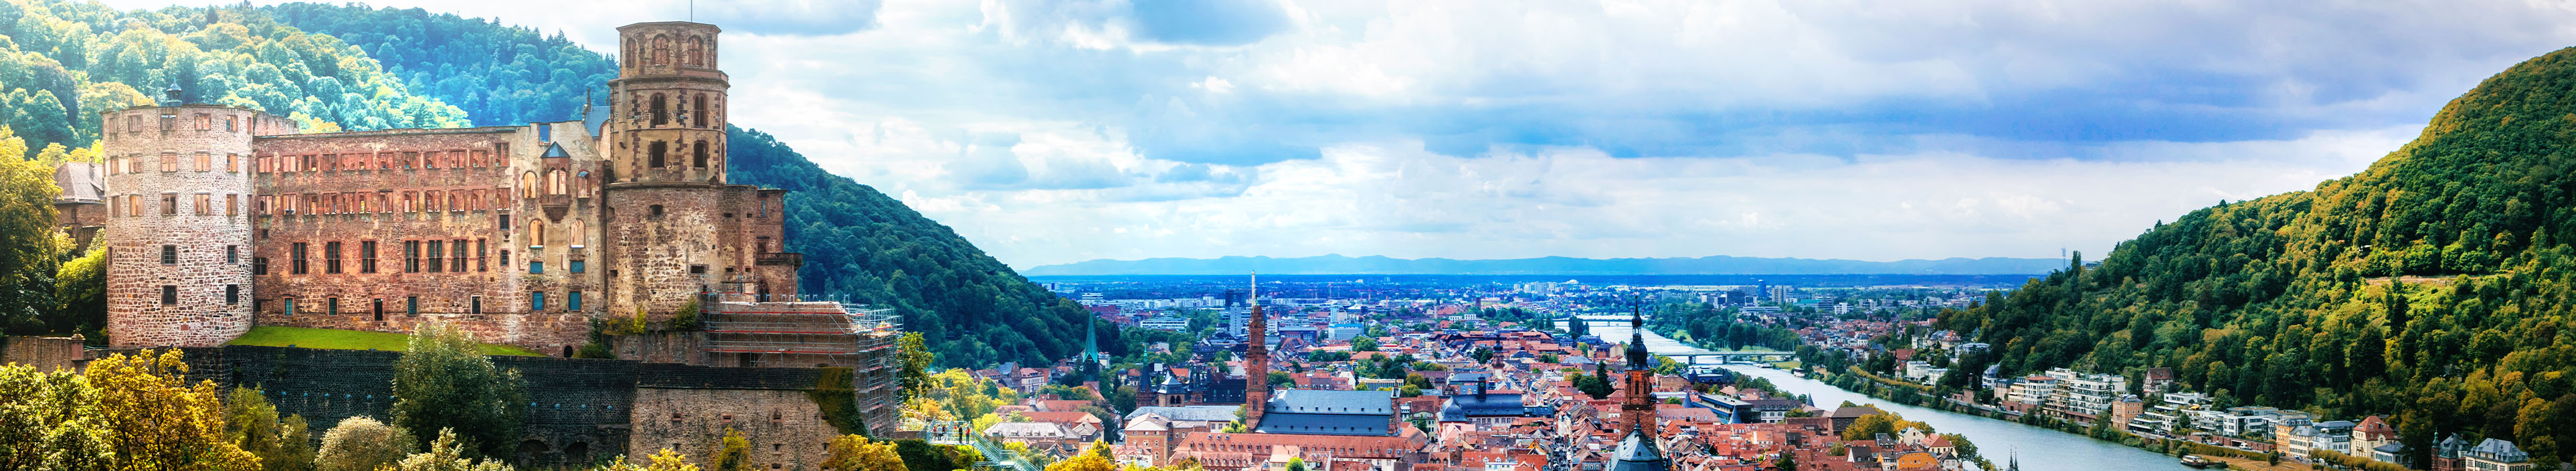 Panoramablick auf die schöne mittelalterliche Stadt Heidelberg, Deutschland